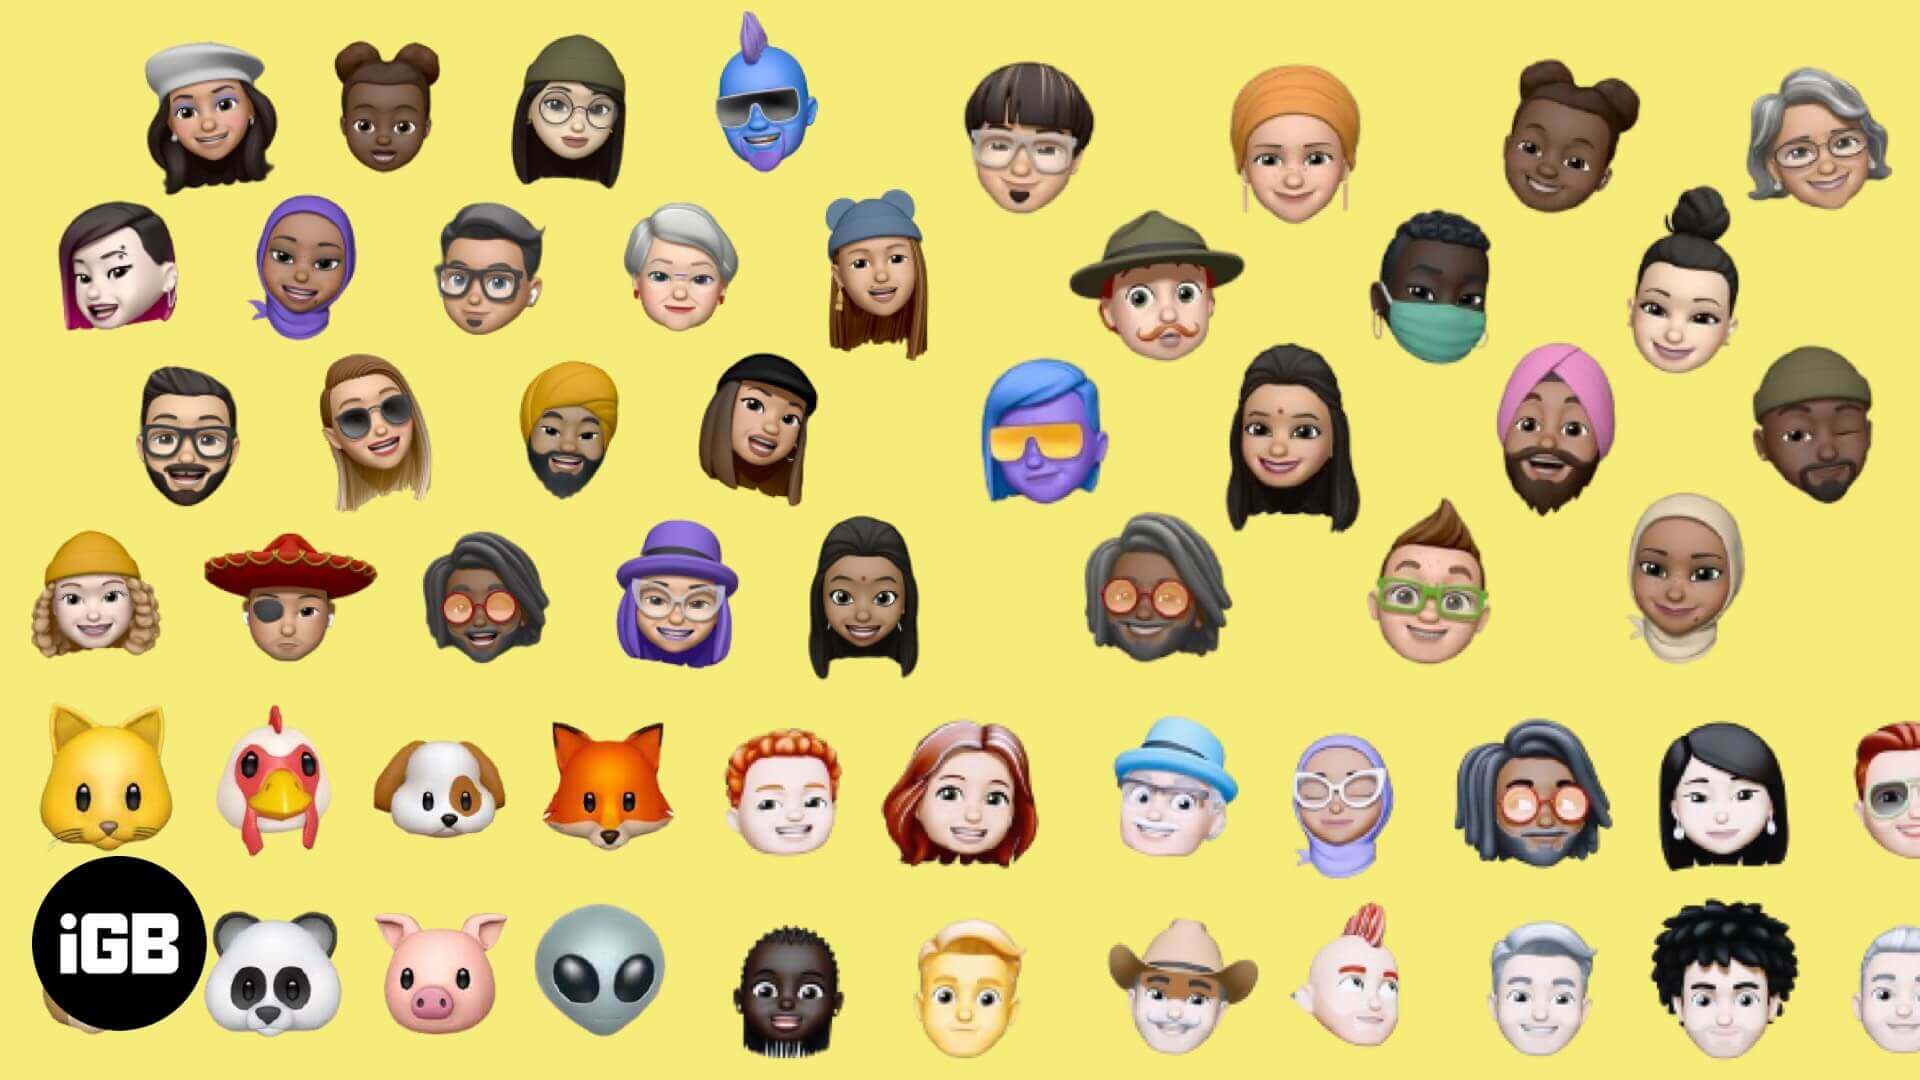 Evolution of emoji